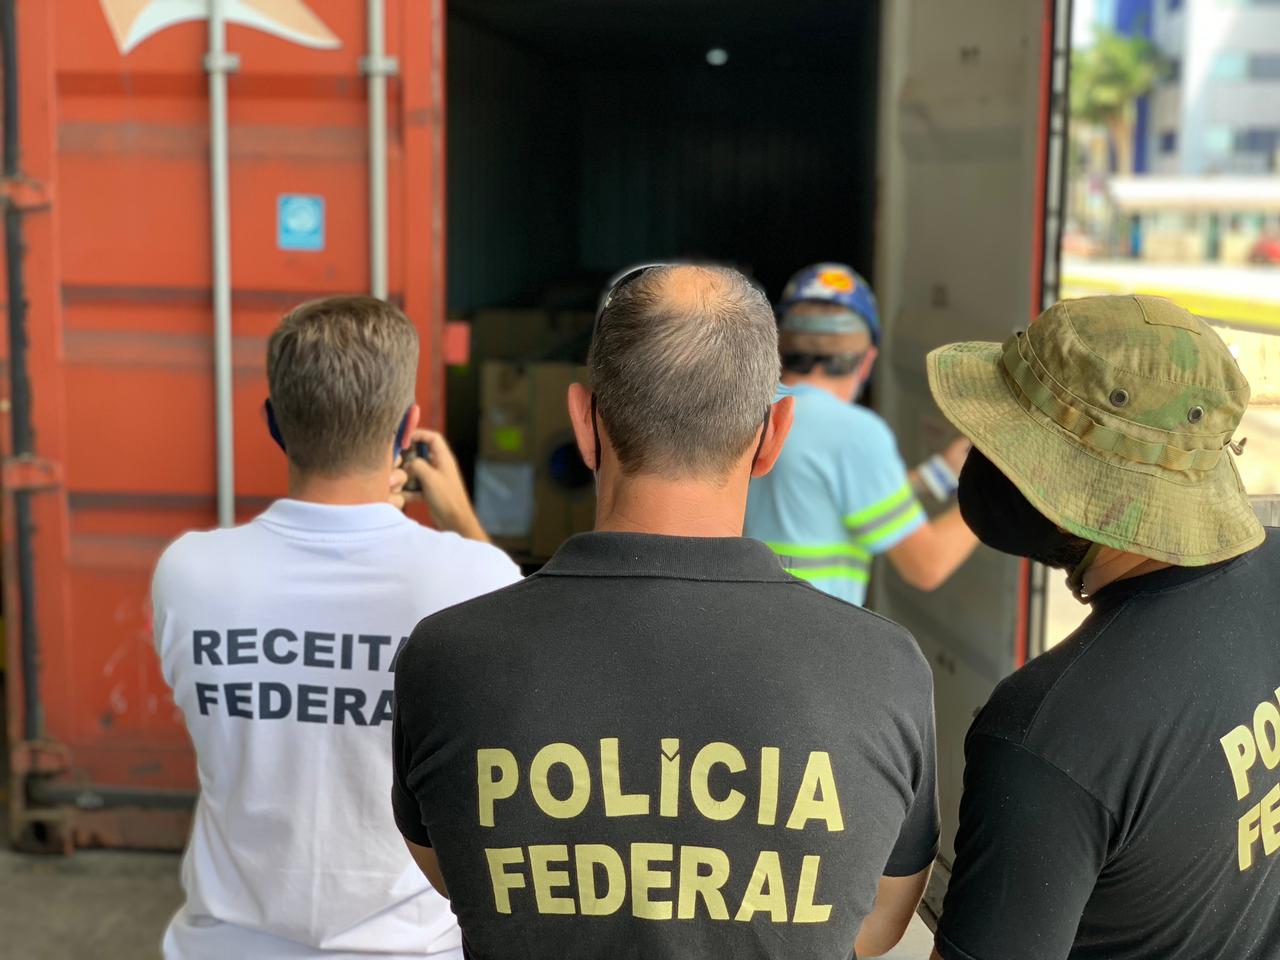 Polícia Federal, Receita Federal e IBAMA fiscalizam contêineres no Porto de Paranaguá